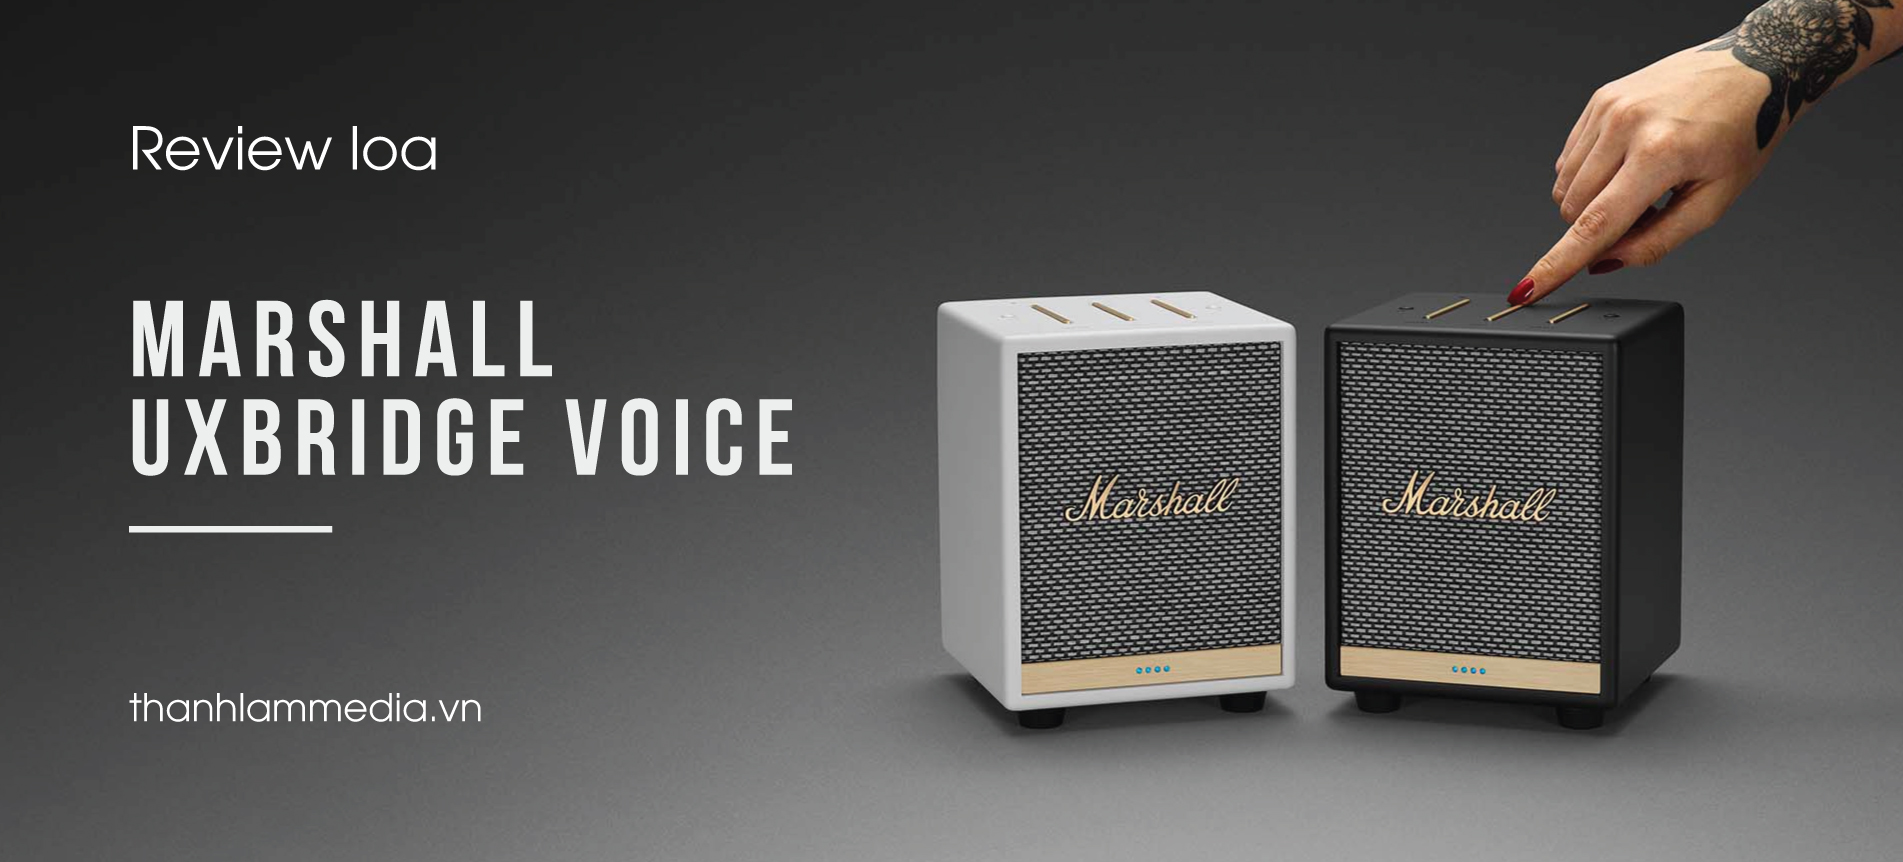 Review loa Marshall Uxbridge Voice - siêu nhỏ gọn, phong cách cực khác biệt 4